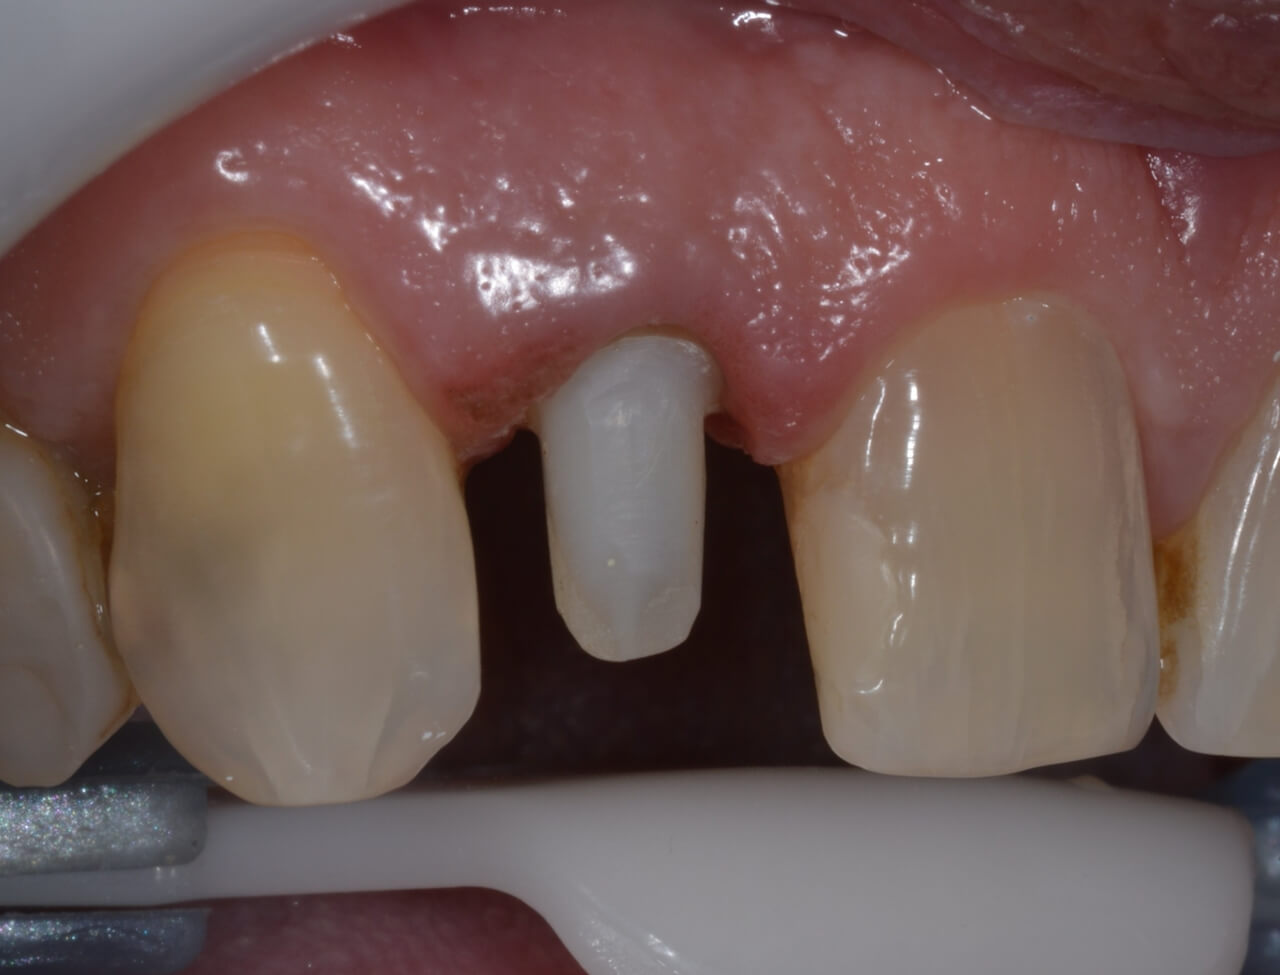 18. Após remoção do isolamento absoluto, o dente foi preparado e moldado com silicone de adição para confecção da coroa cerâmica.